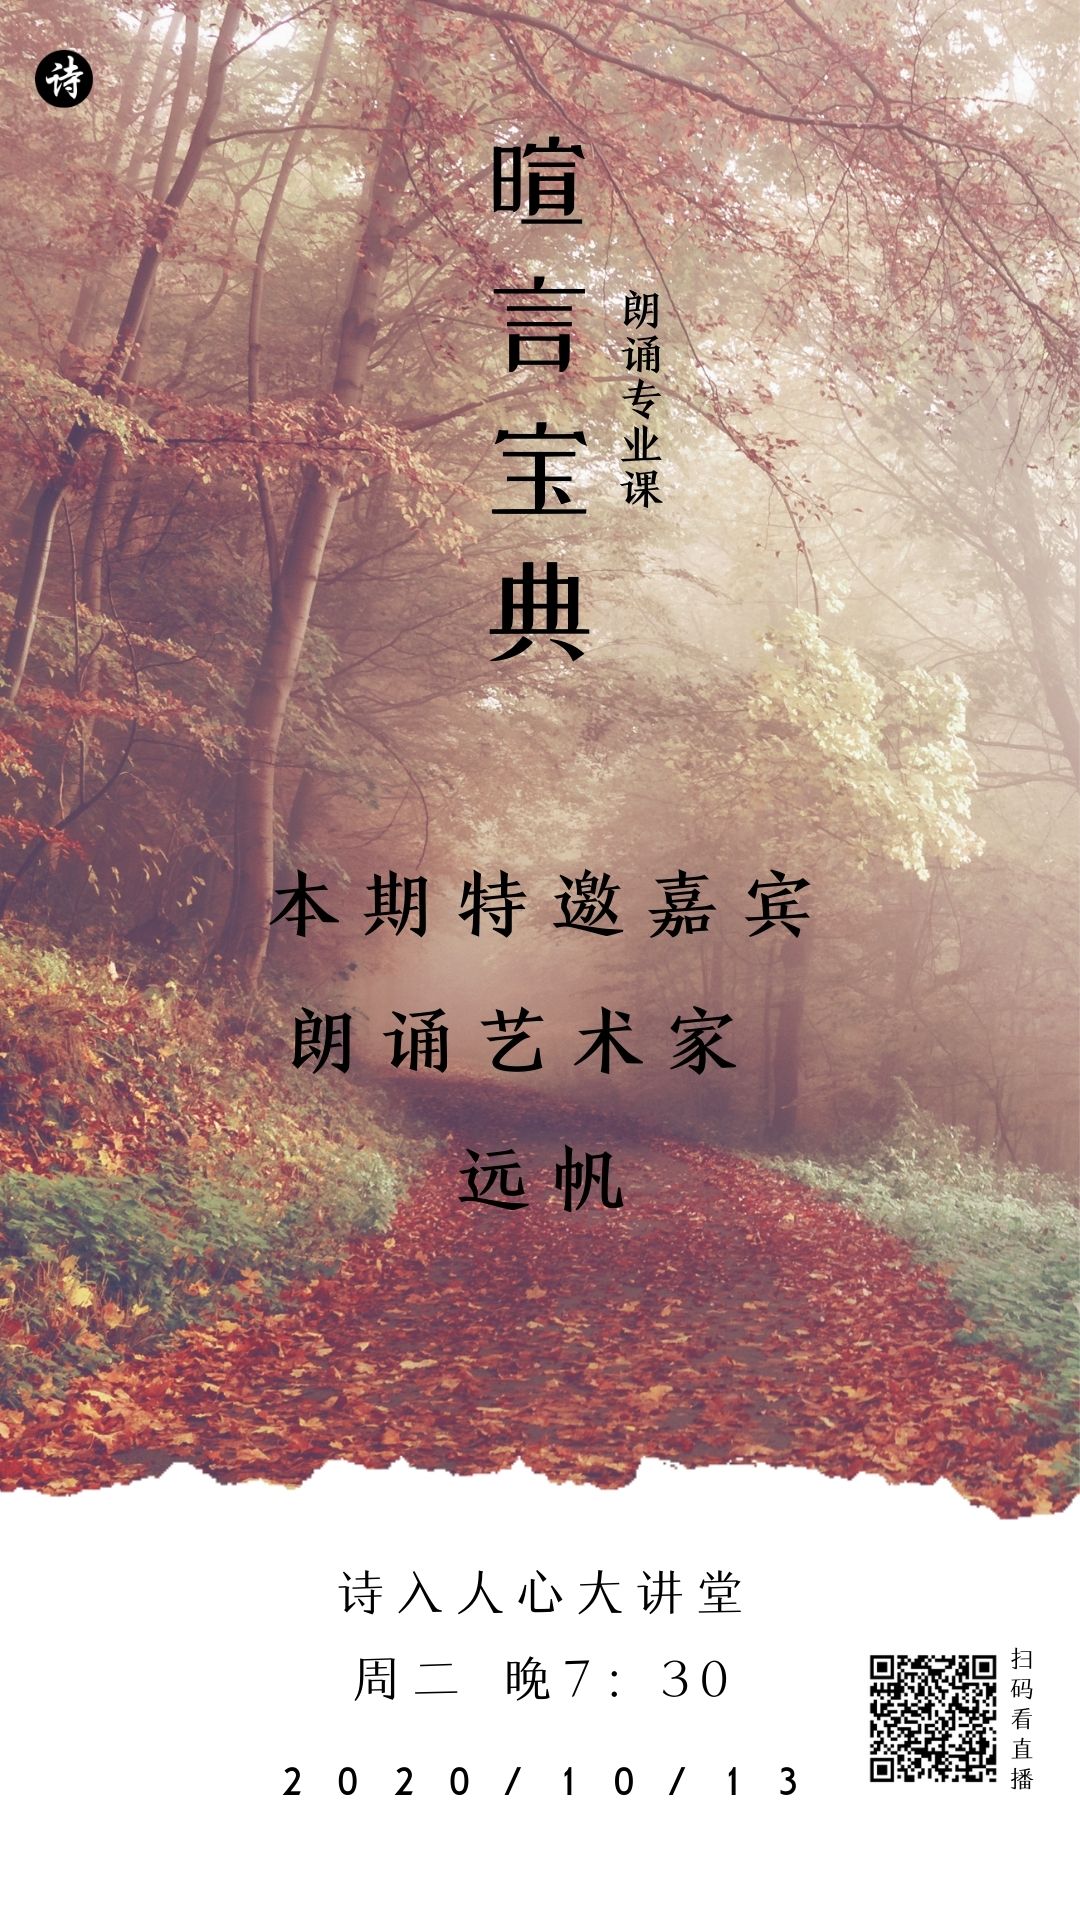 橙色十月秋天森林照片分享中文日签 (1).jpg